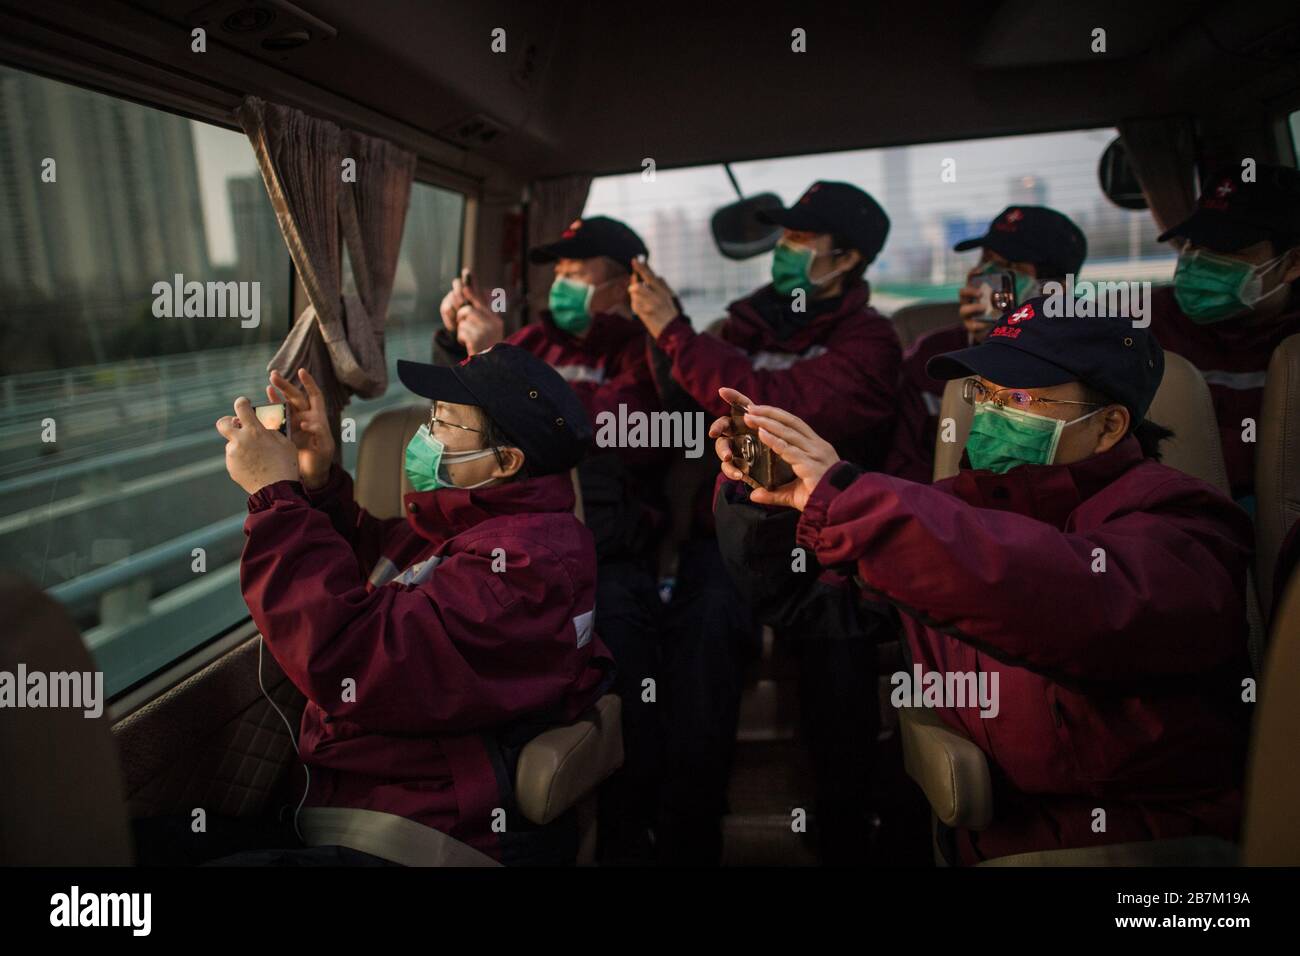 (200317) -- WUHAN, 17. März 2020 (Xinhua) -- Medics aus der nordwestchinesischen Provinz Shaanxi machen Fotos von der Stadtansicht mit ihren Mobiltelefonen in einem Bus in Wuhan, der zentralchinesischen Provinz Hubei, am 17. März 2020. Gegen 7 Uhr am Dienstag verließen 43 Sanitäter aus der nordwestchinesischen Provinz Shaanxi Wuhan in neun Bussen. Die erste Reihe von Sanitätern soll Hubei, einst die schwer angeschlagene Provinz des neuartigen Coronavirus, am Dienstag verlassen haben, da die epidemische Situation stark gelockert wurde. Die 3.675 medizinischen Mitarbeiter von 41 medizinischen Teams aus ganz China haben 14 Versuchoren unterstützt Stockfoto